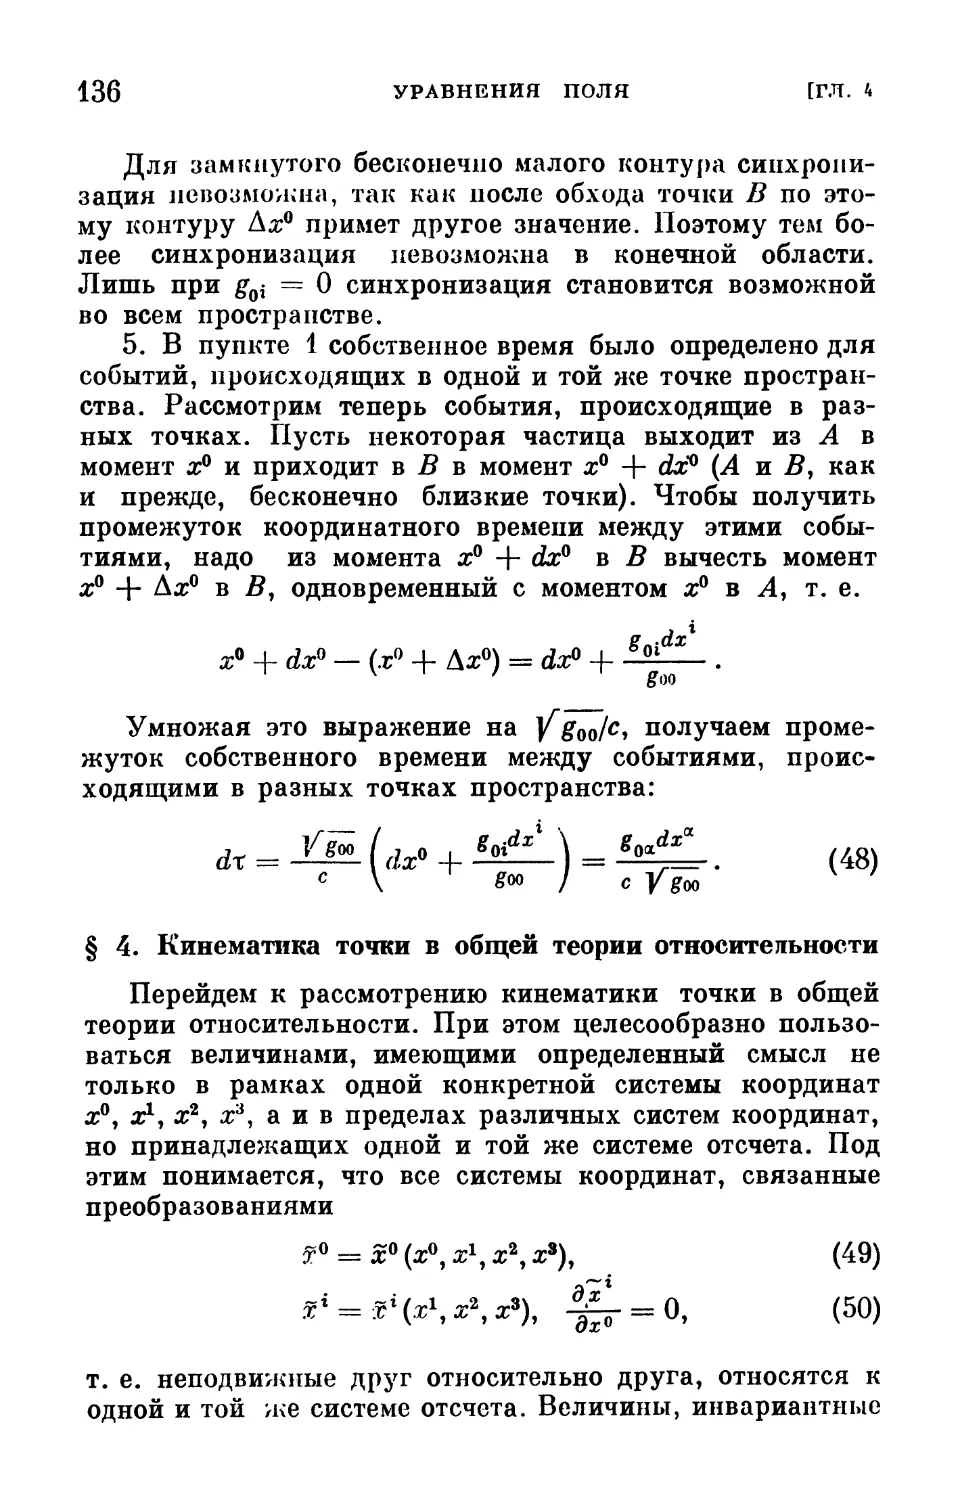 § 4. Кинематика точки в общей теории относительности